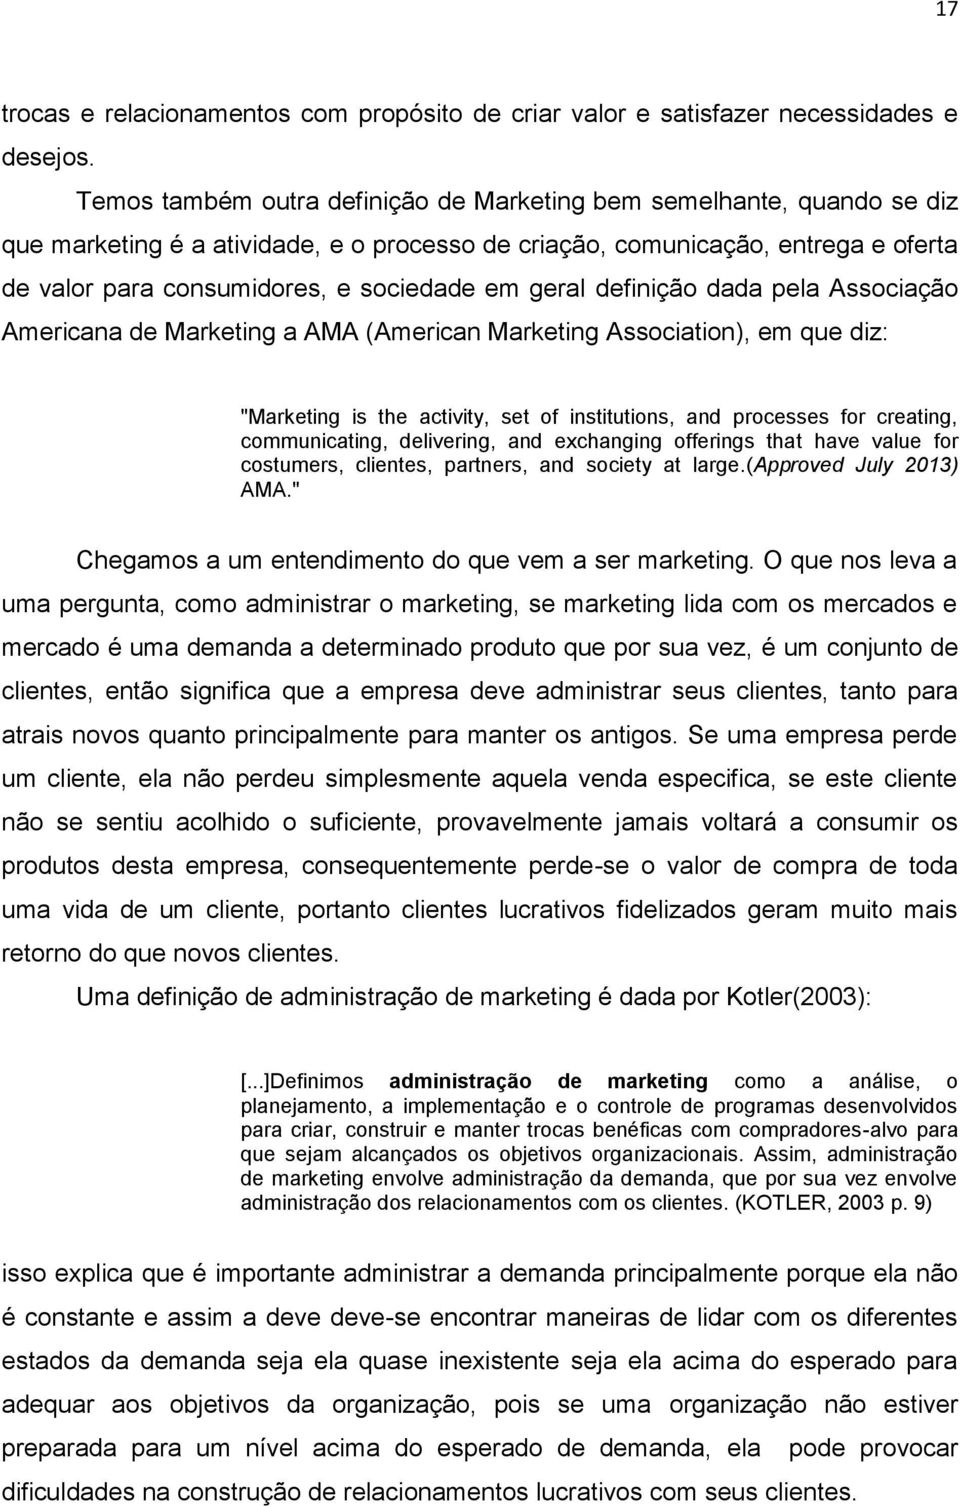 geral definição dada pela Associação Americana de Marketing a AMA (American Marketing Association), em que diz: "Marketing is the activity, set of institutions, and processes for creating,